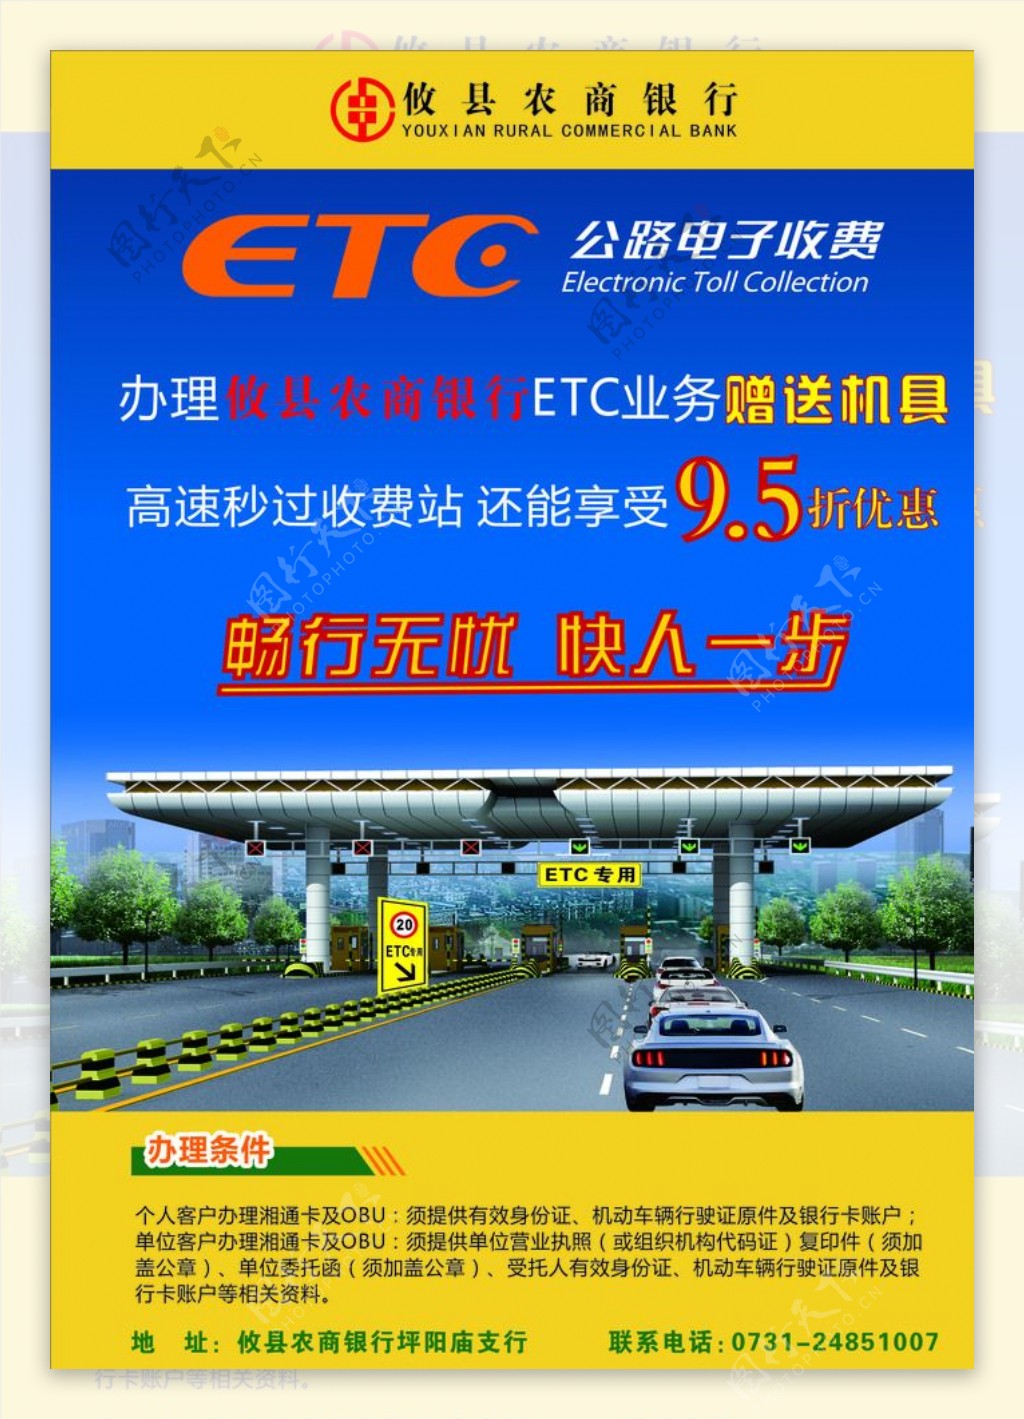 攸县农商银行ETC